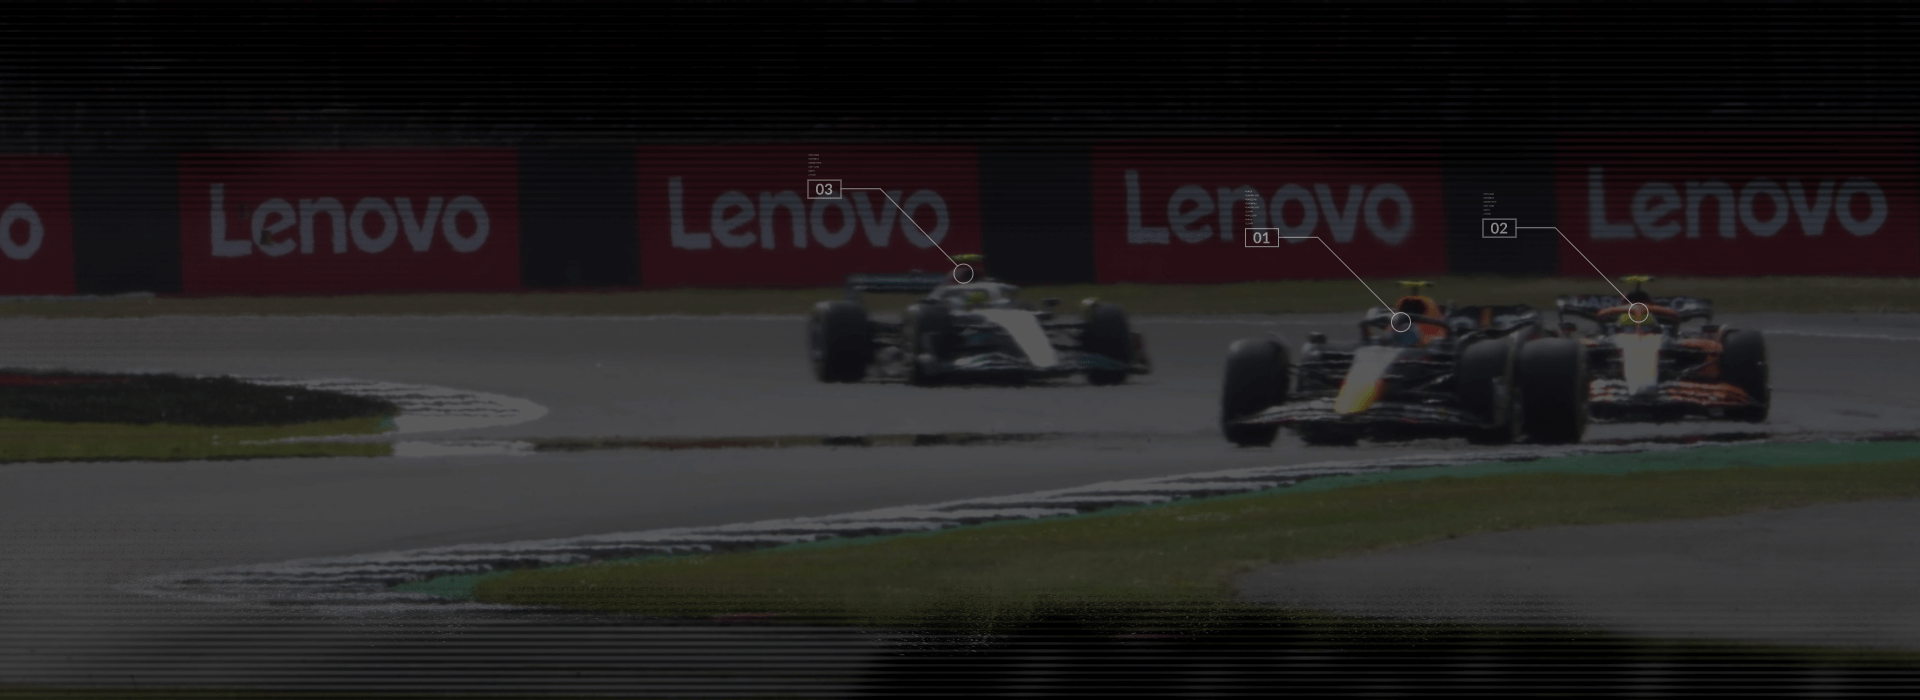 3 voitures de F1 sur un circuit avec des bannières Lenovo en arrière-plan